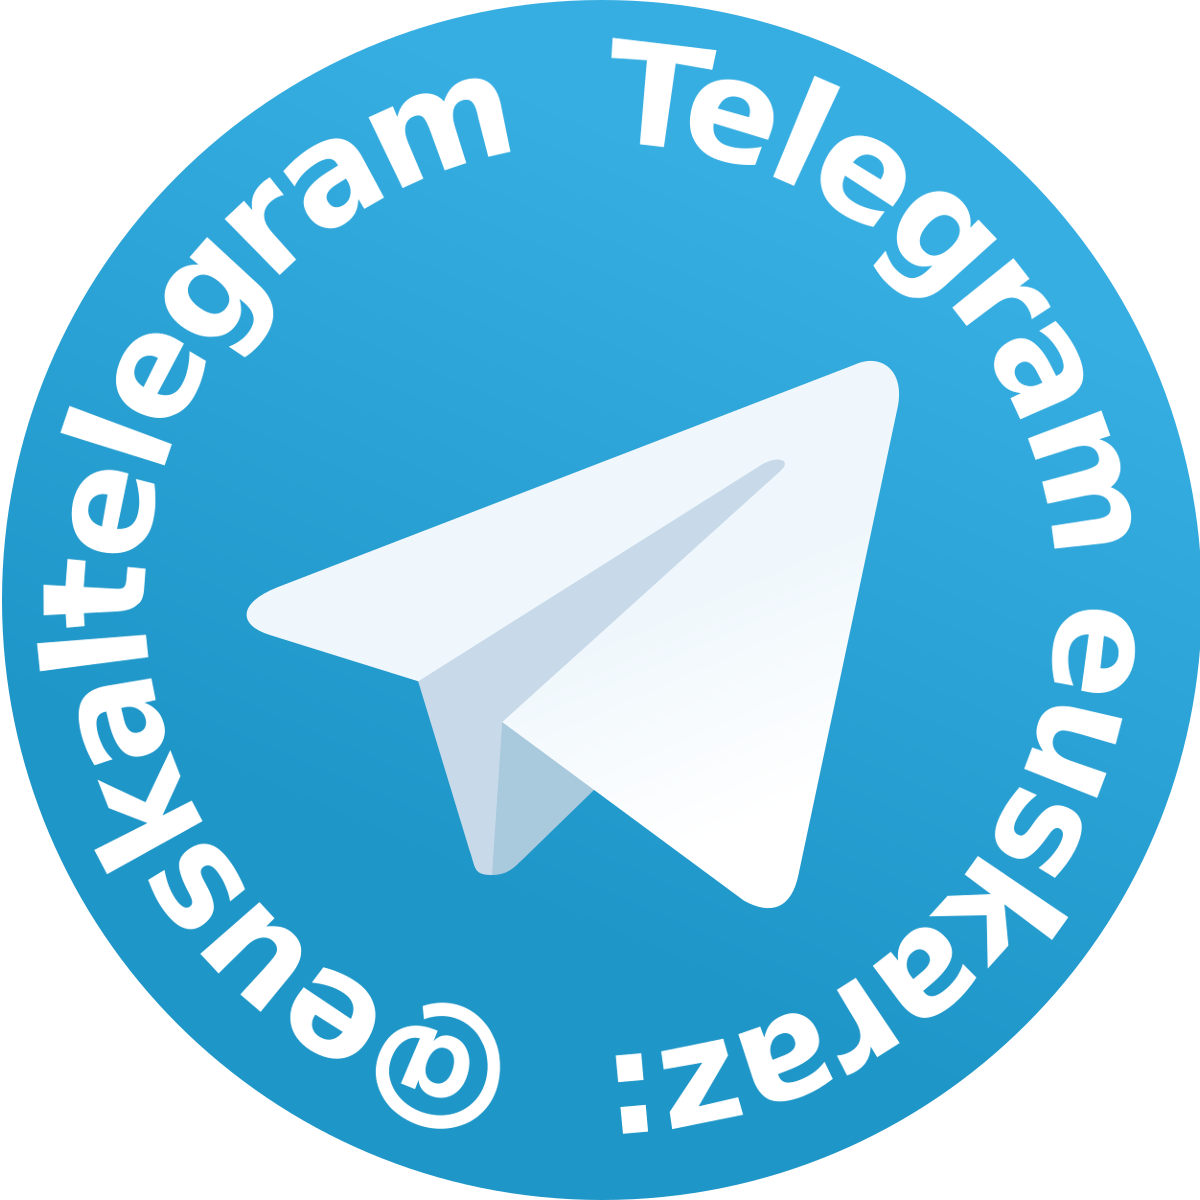 Ярлык телеграм